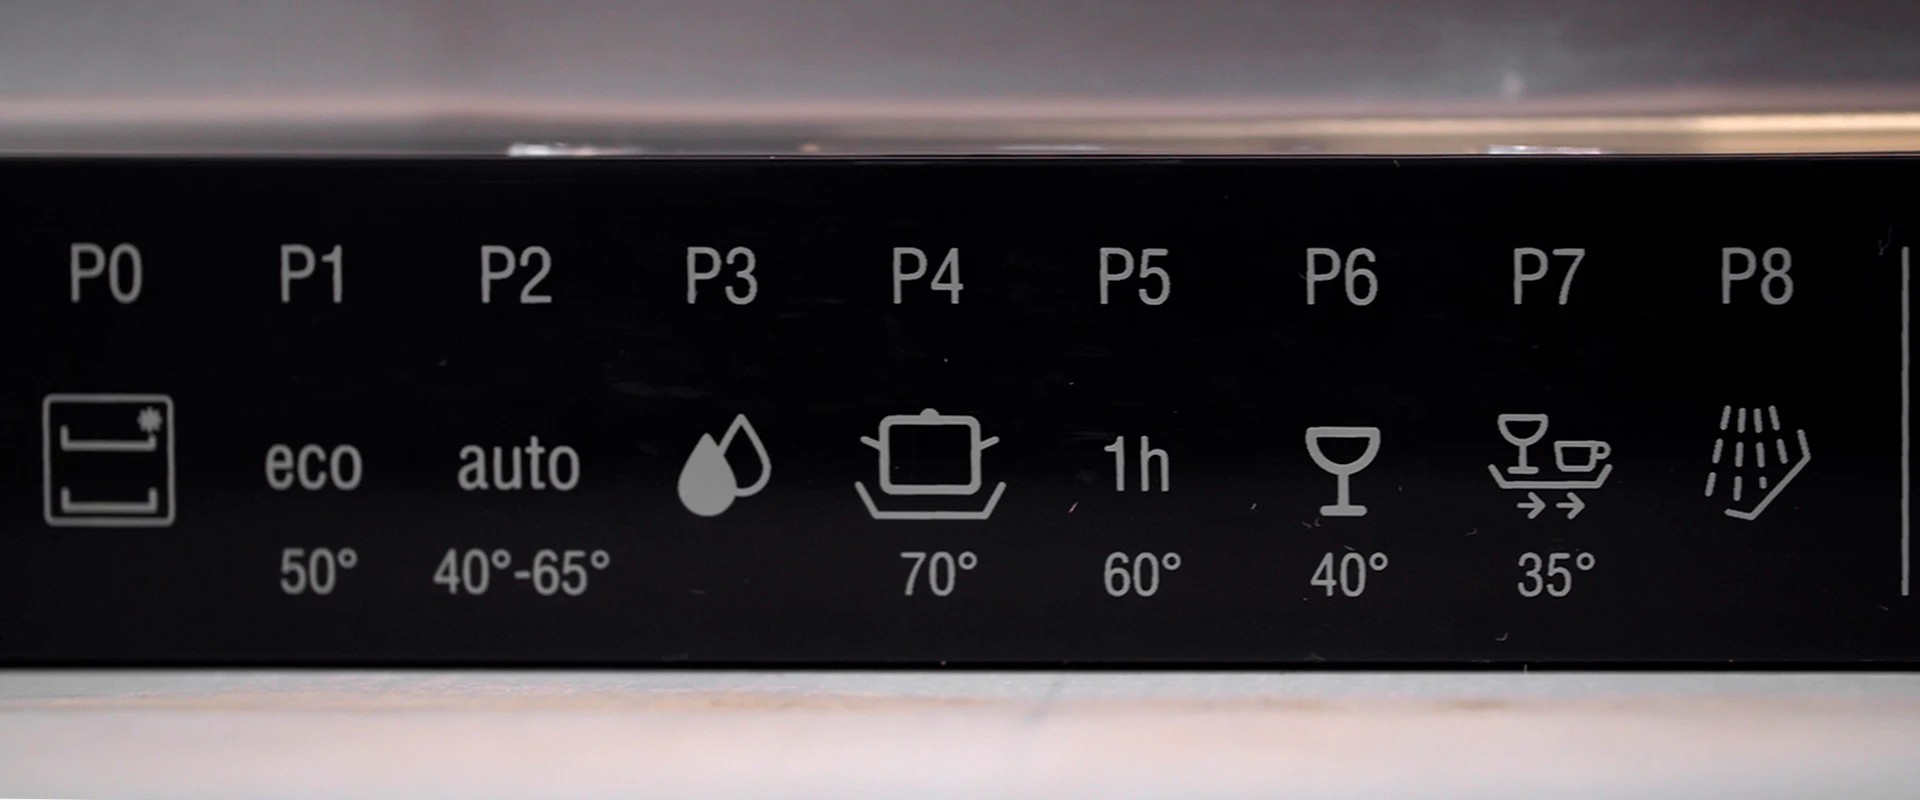 Горячая для дезинфекции или прохладная для защиты окружающей среды — какая температура воды должна быть в посудомоечной машине?